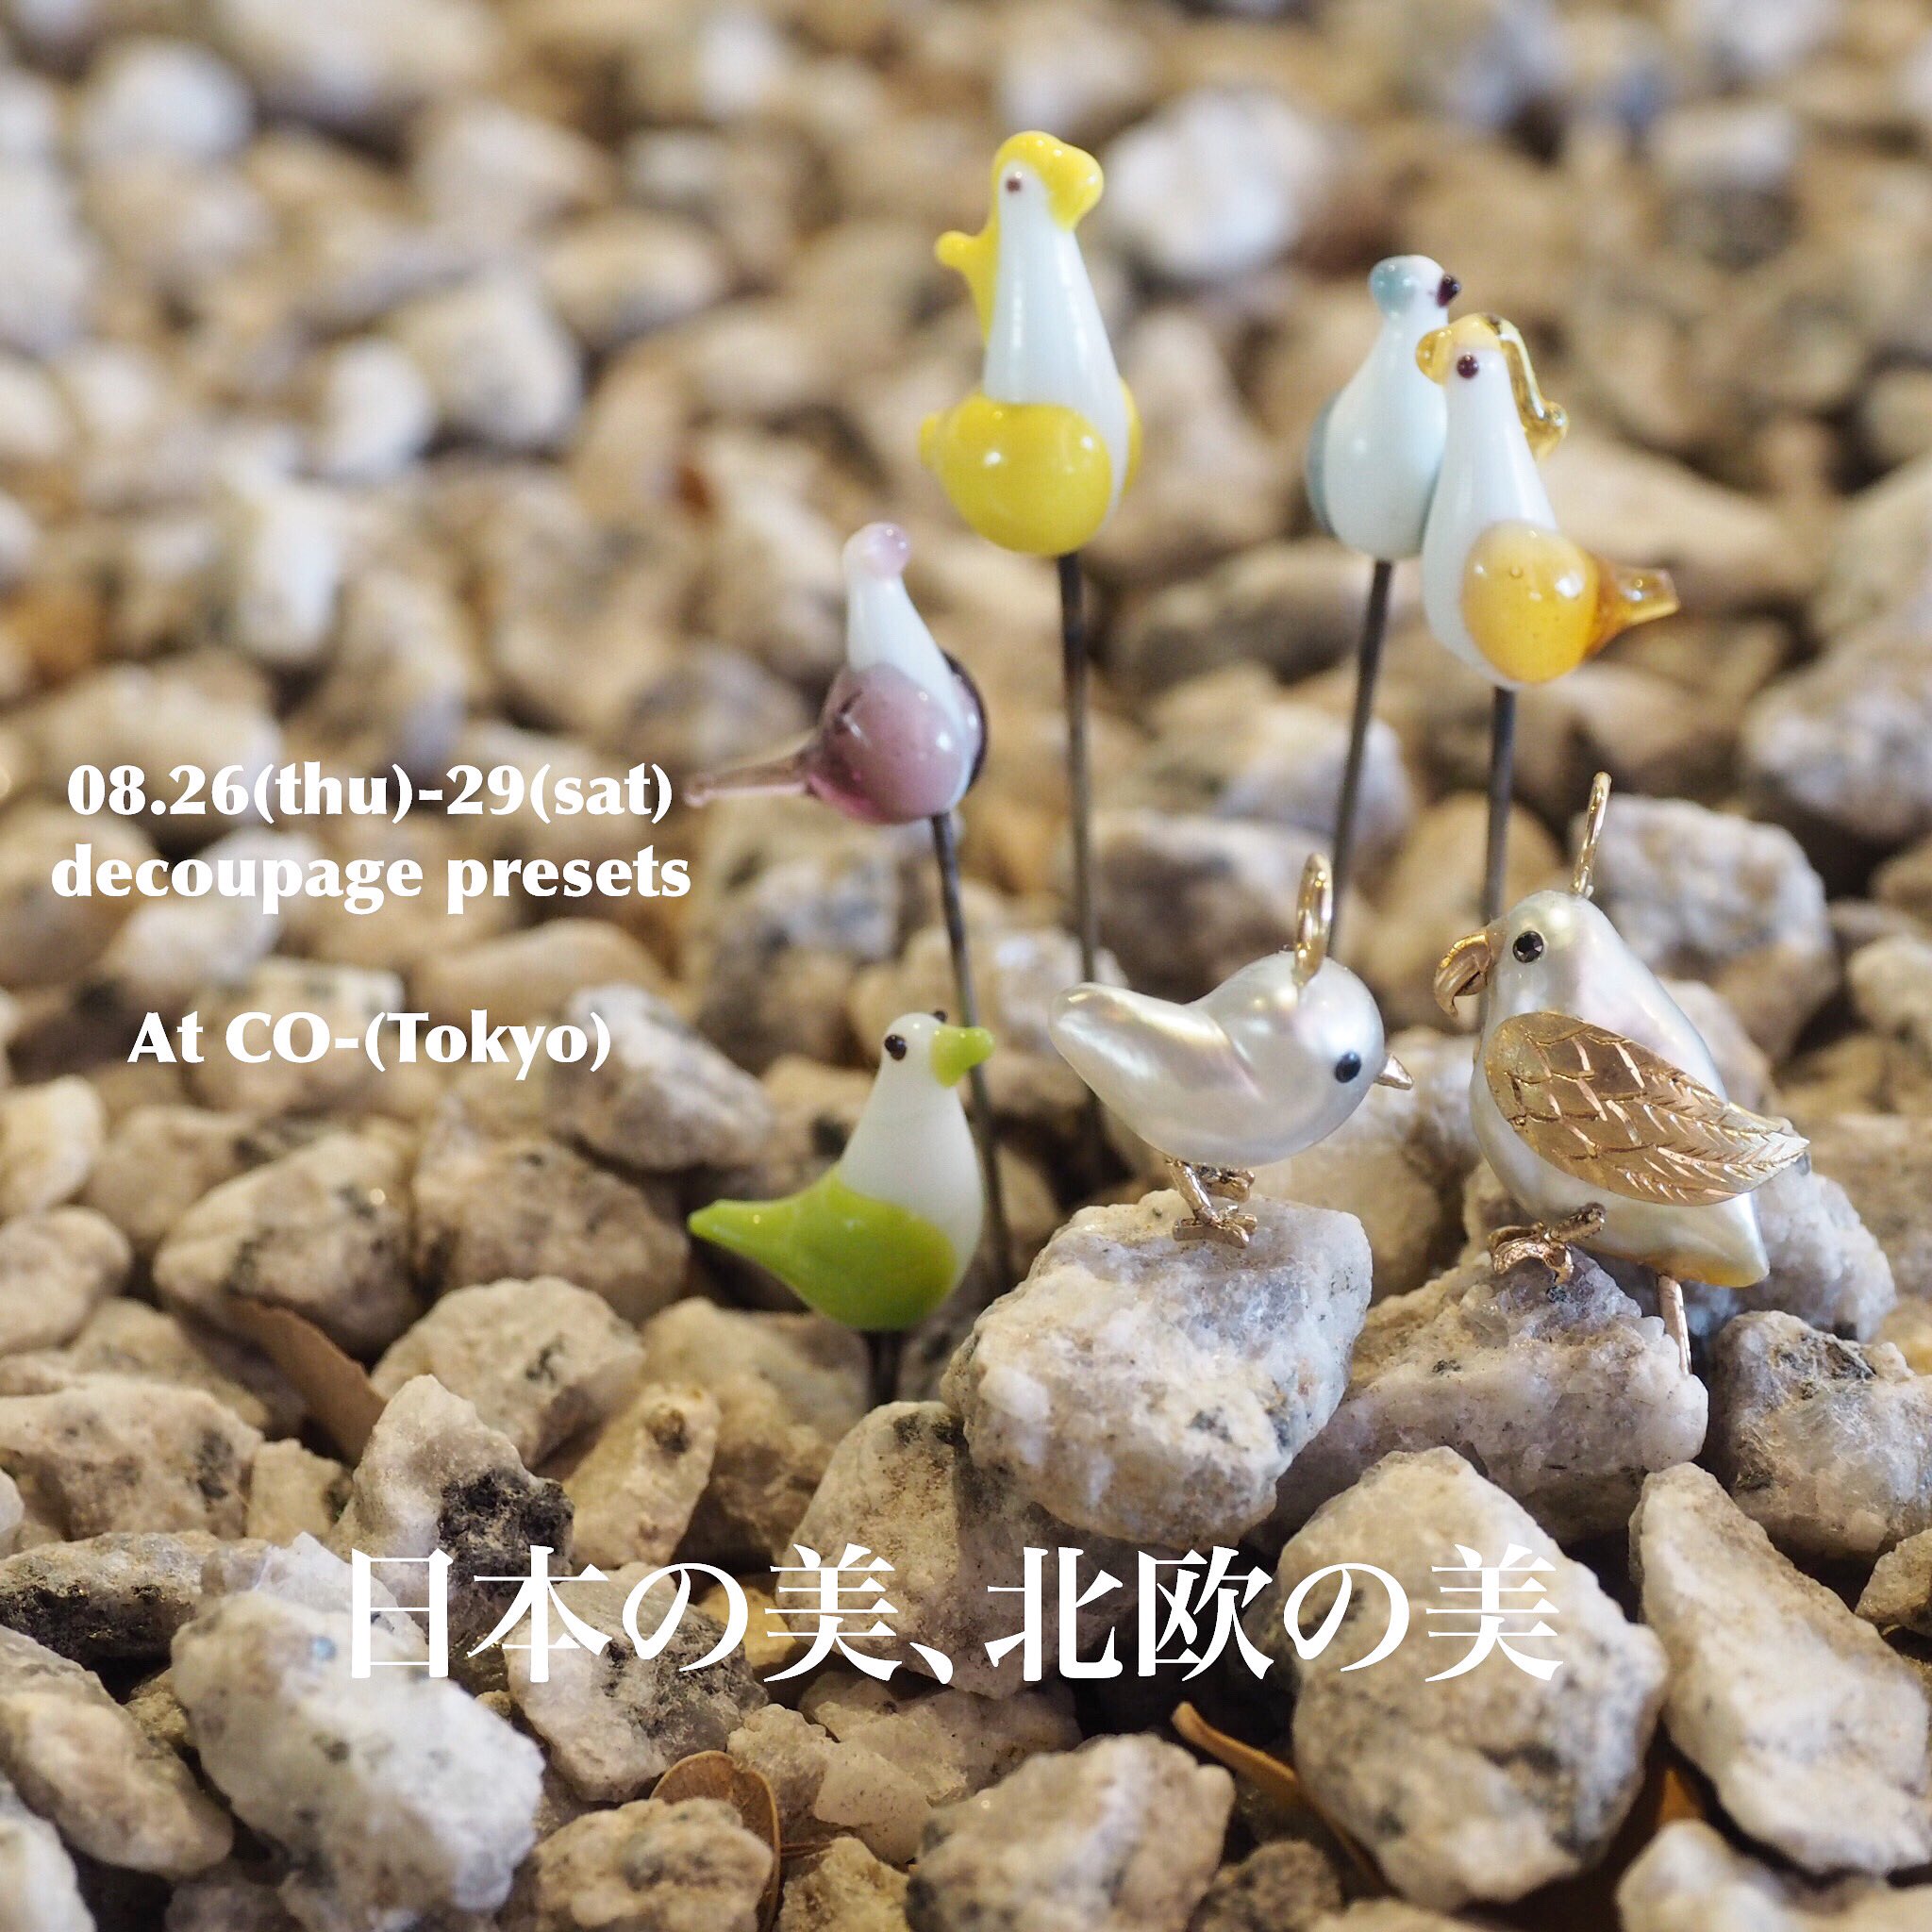 【店内イベント】decoupage 「日本の美、北欧の美」